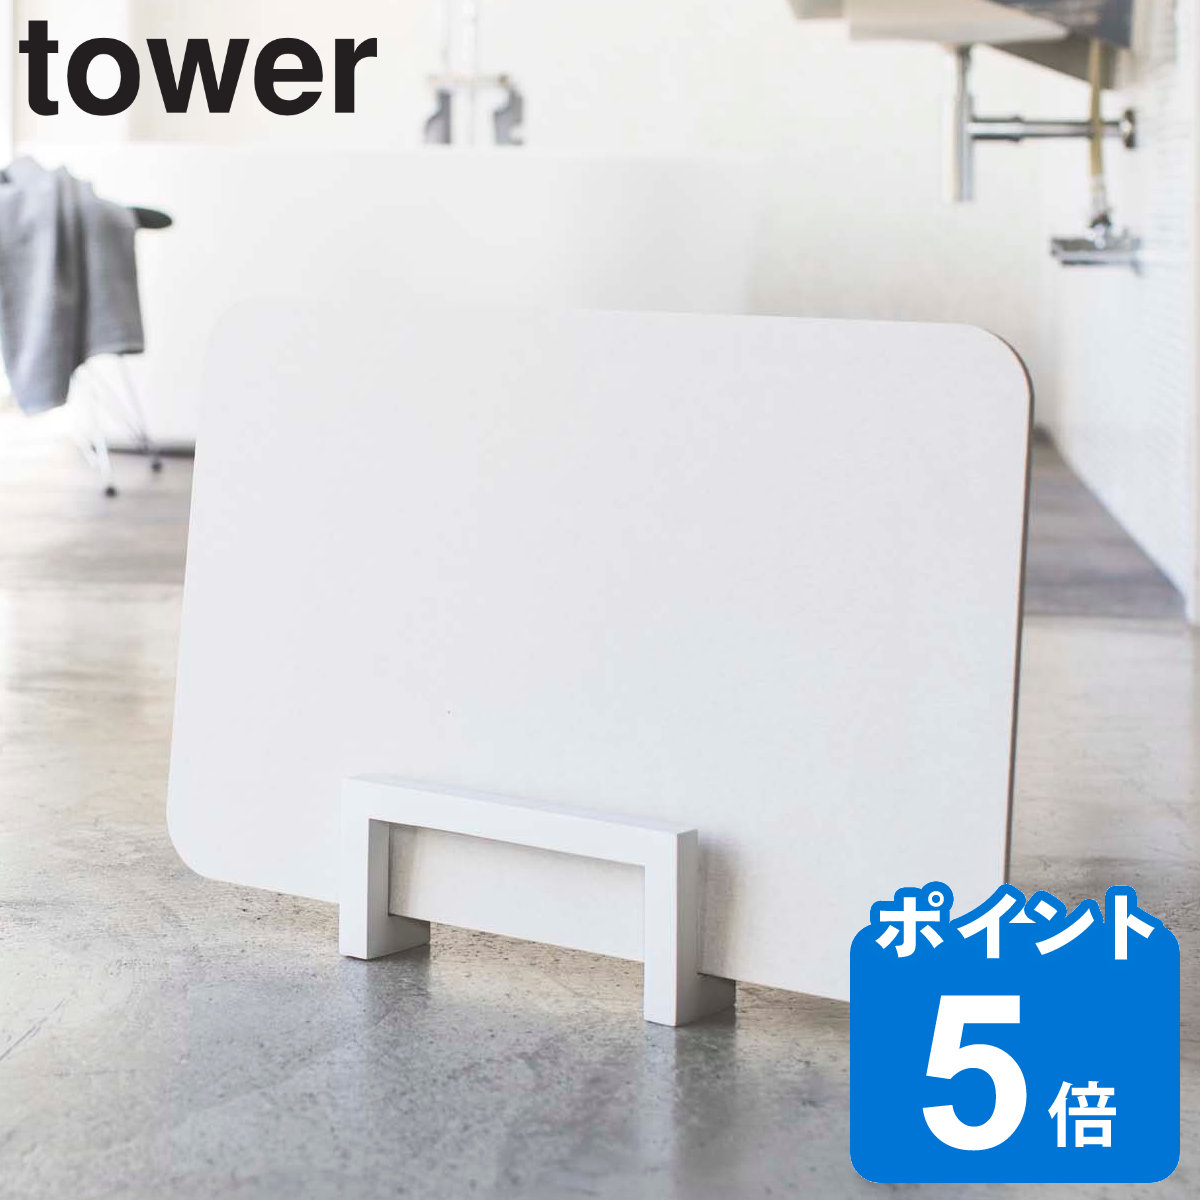 山崎実業 tower コンパクト珪藻土バスマットスタンド タワー